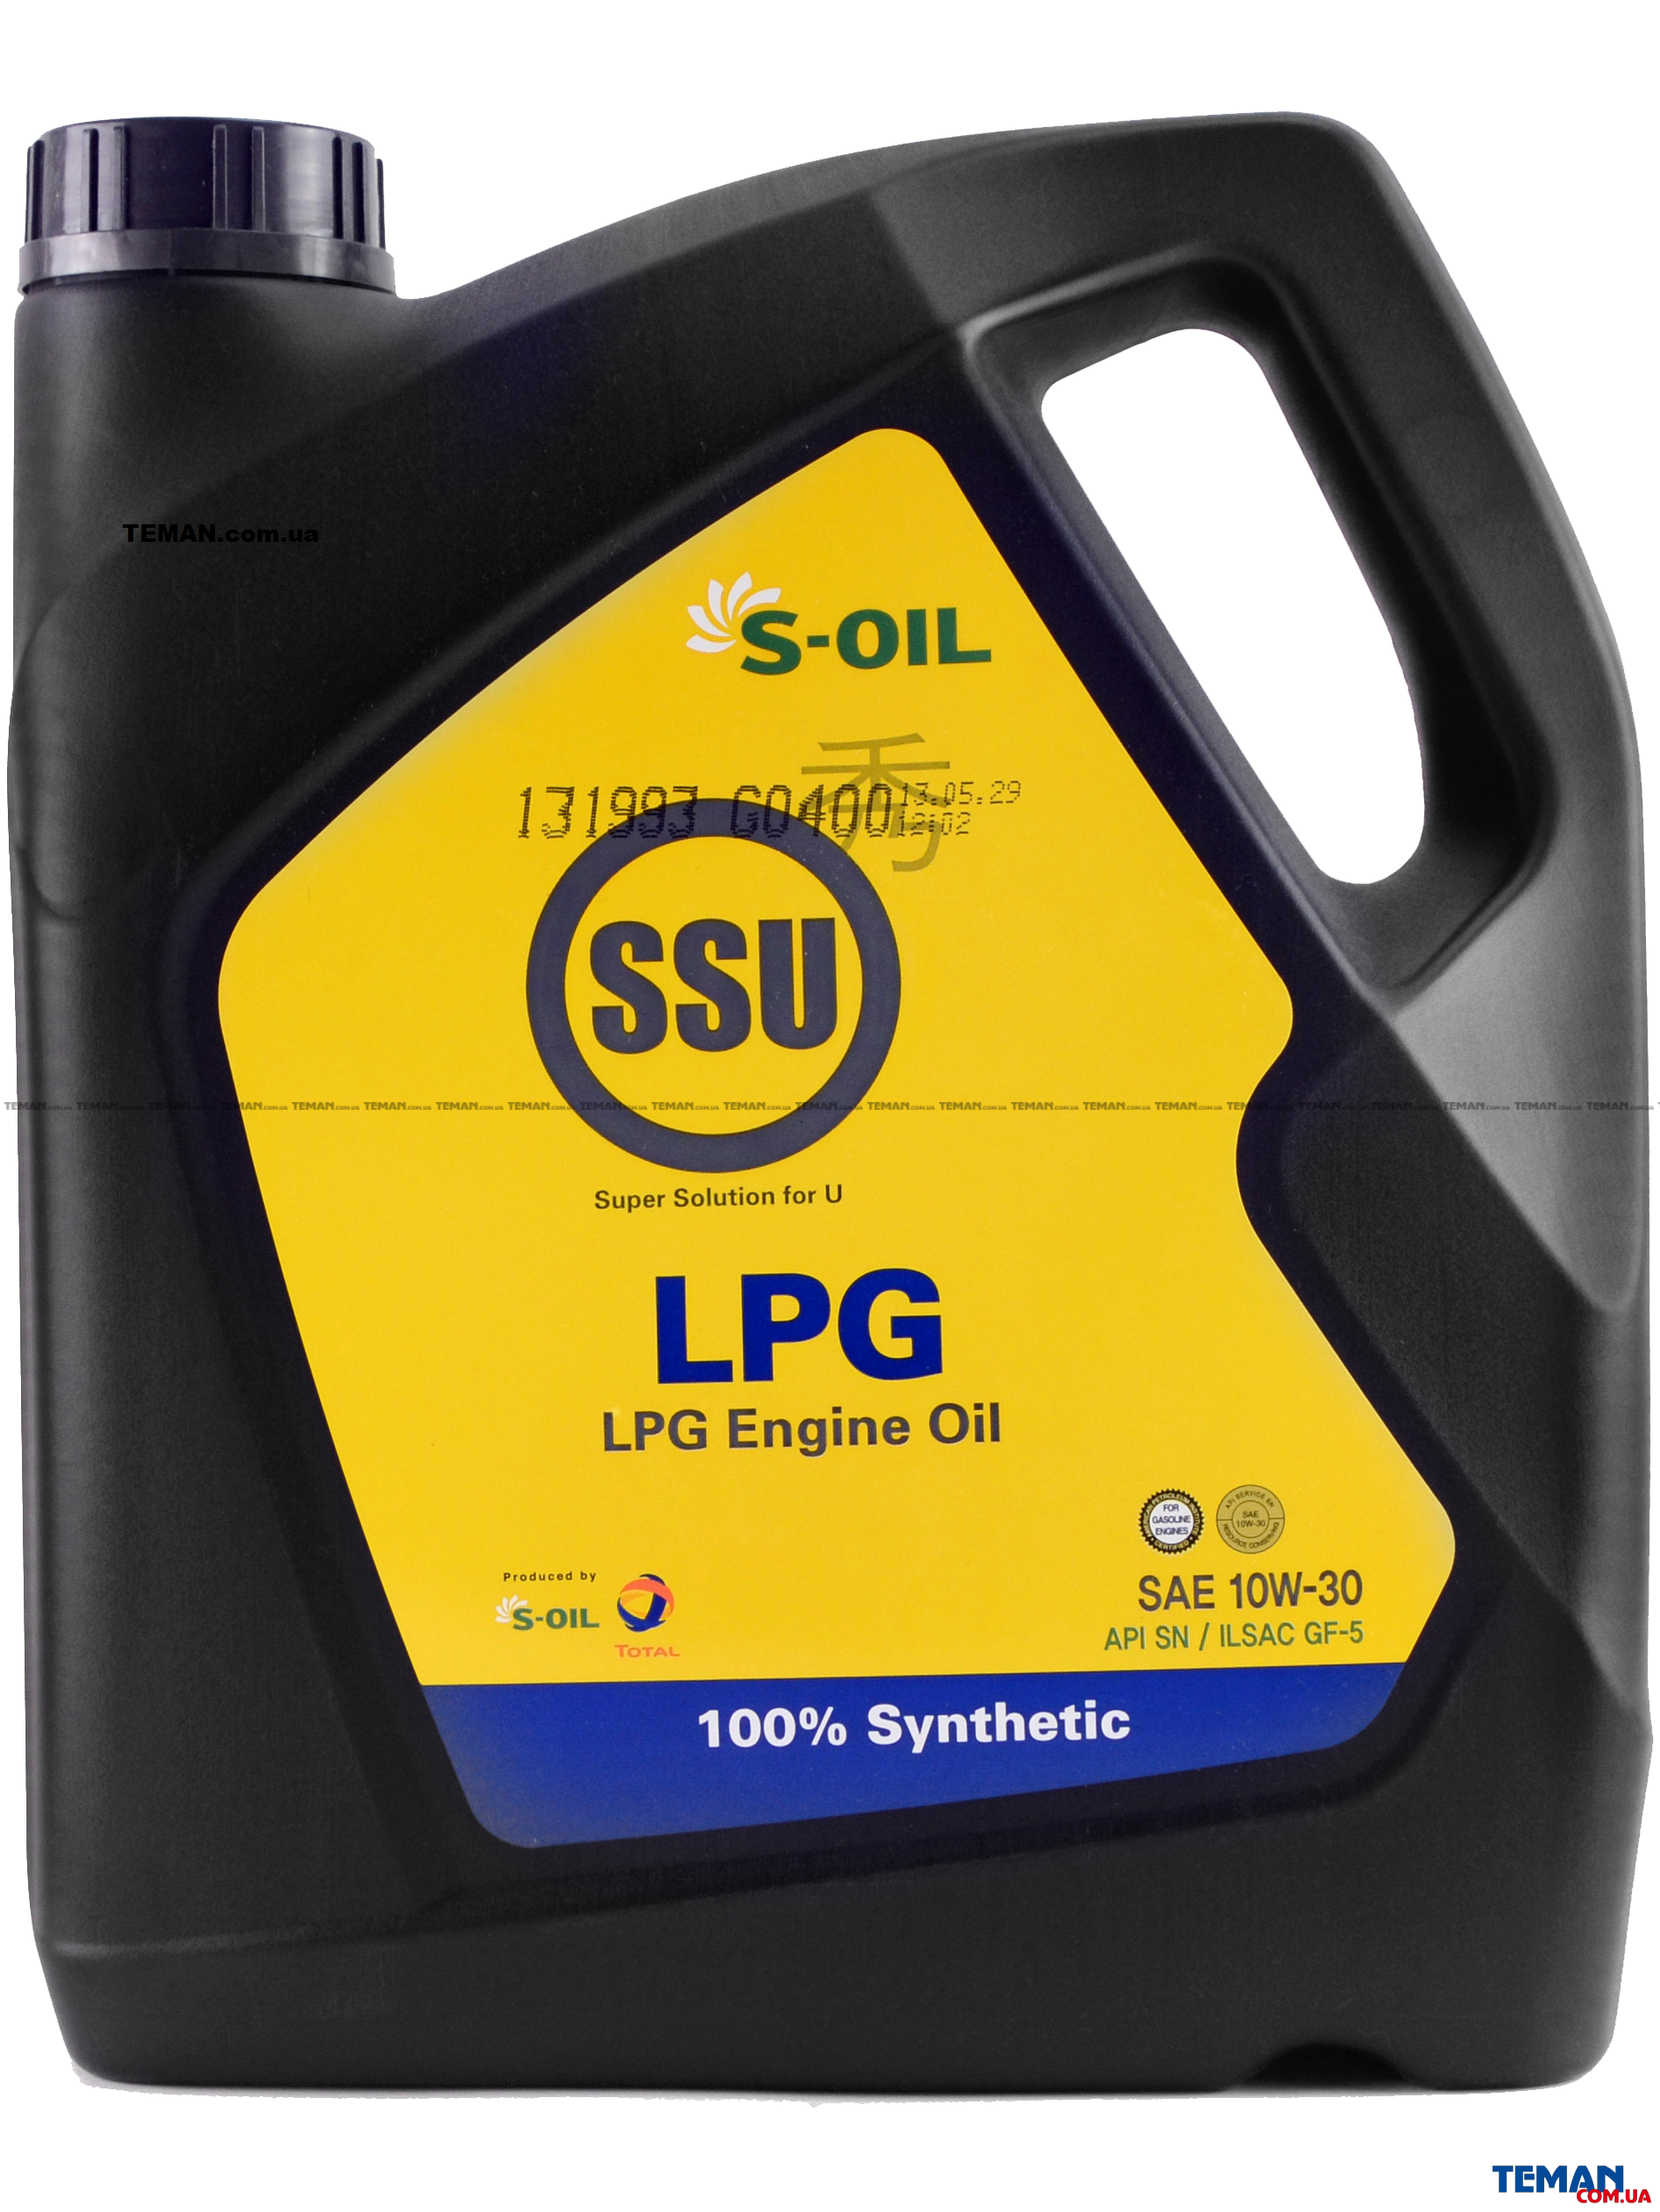  S-OIL SEVEN LPG 10W30  (SSU LPG 10W30) 